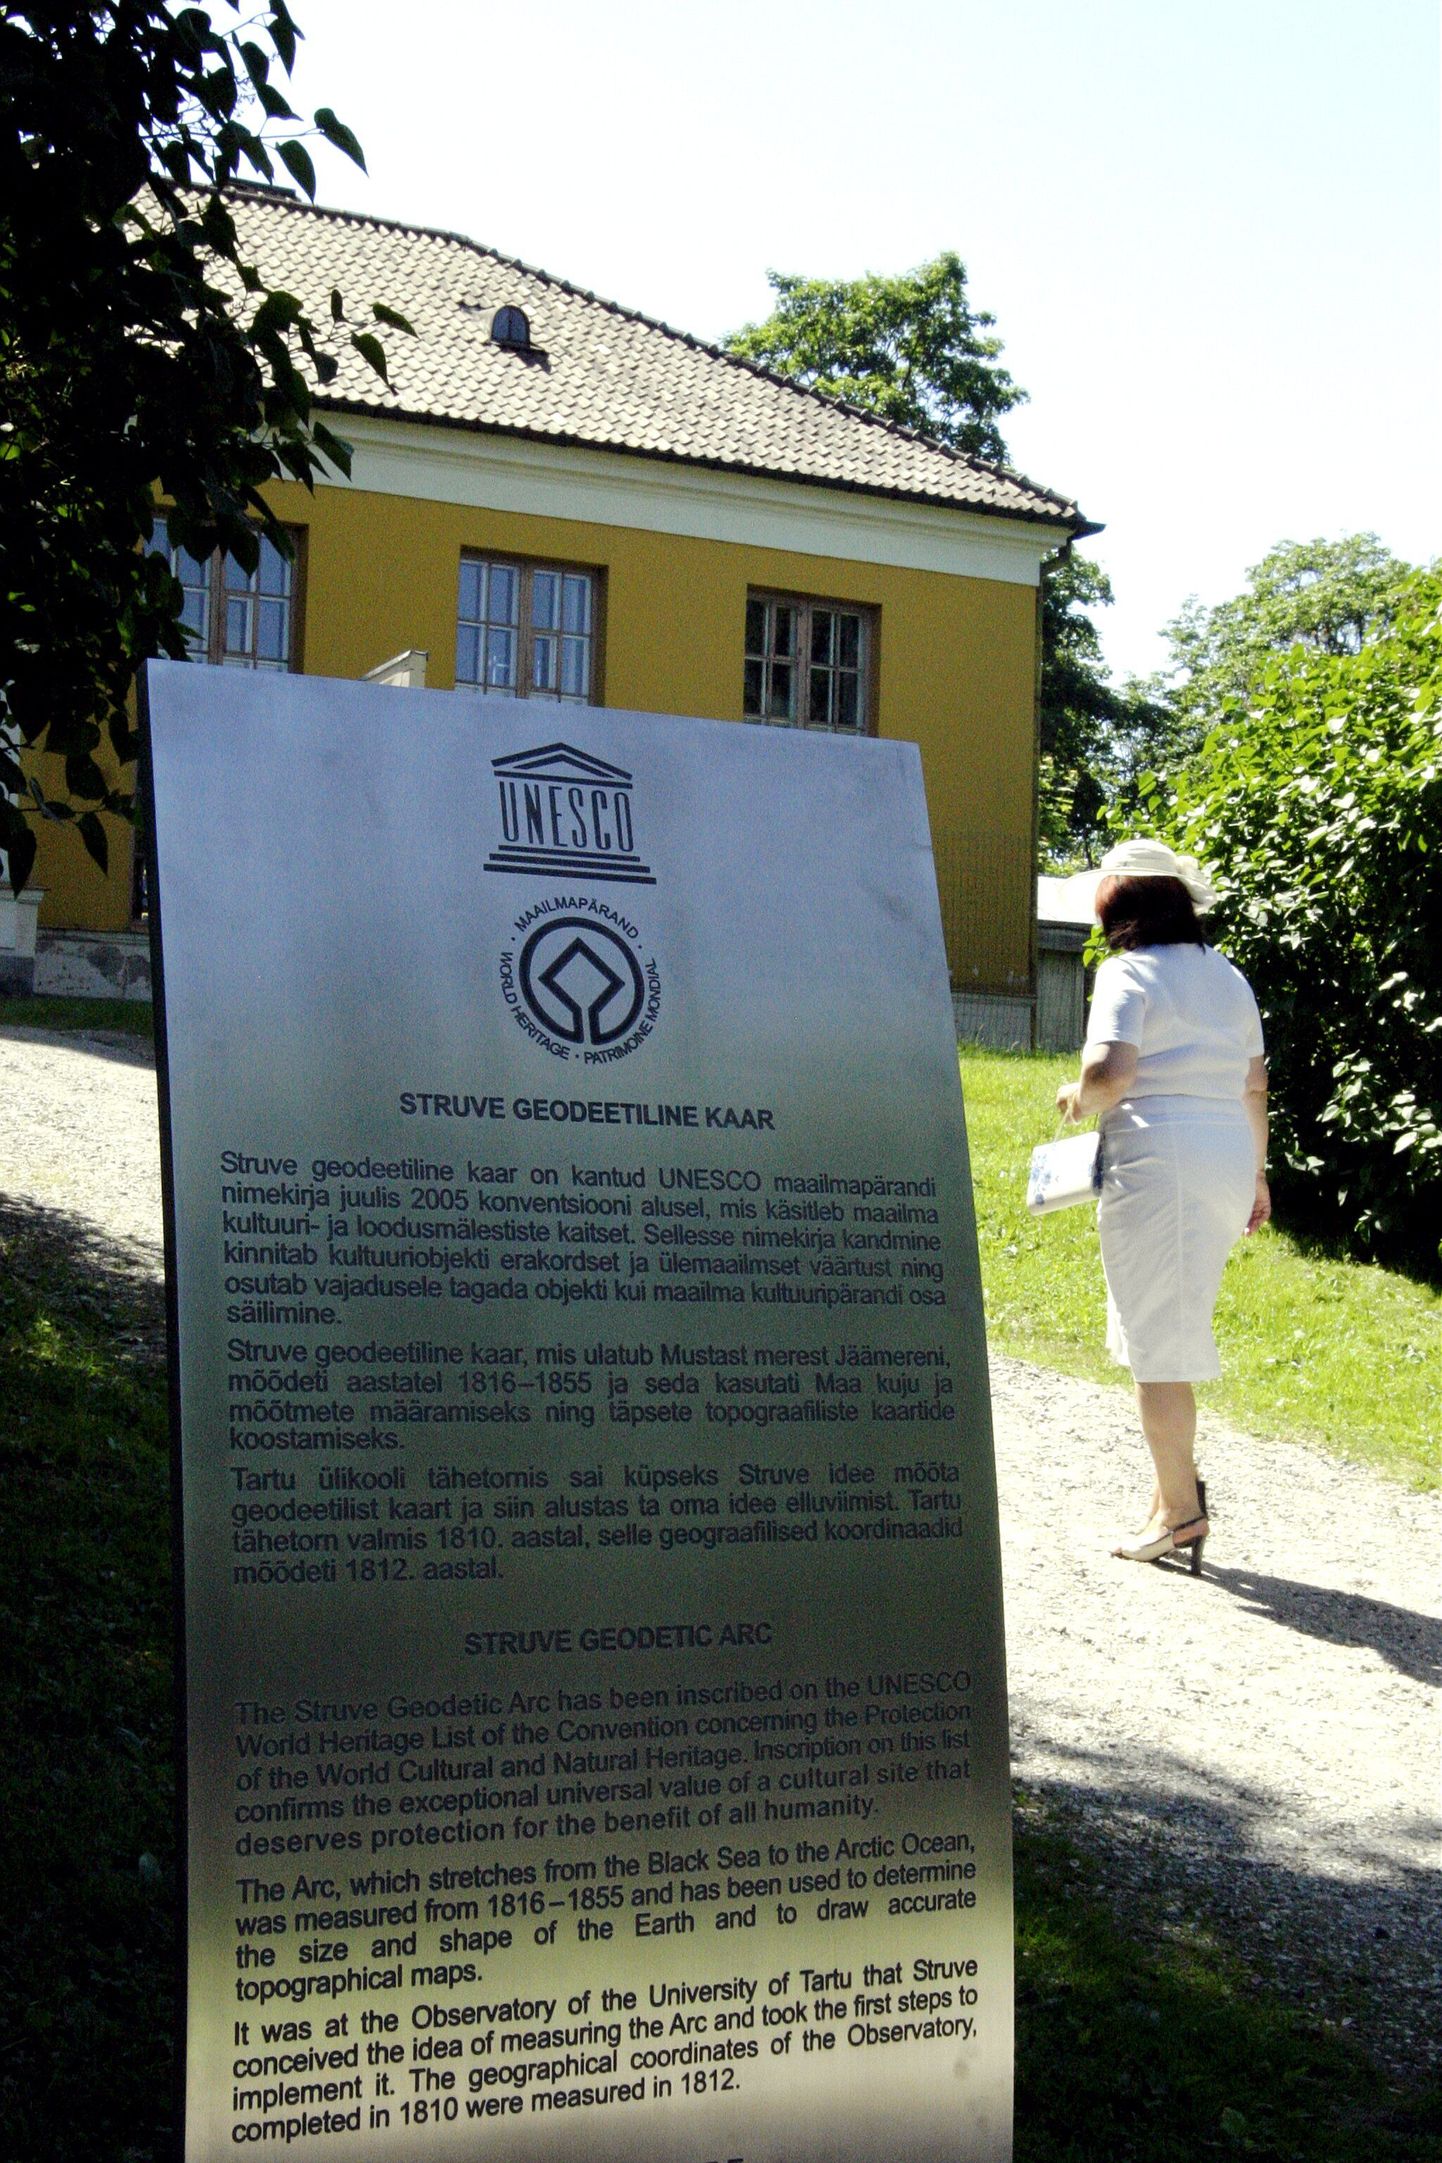 Табличка около Тартуской обсерватории, которая является частью геодезичечкой дуги Струве.